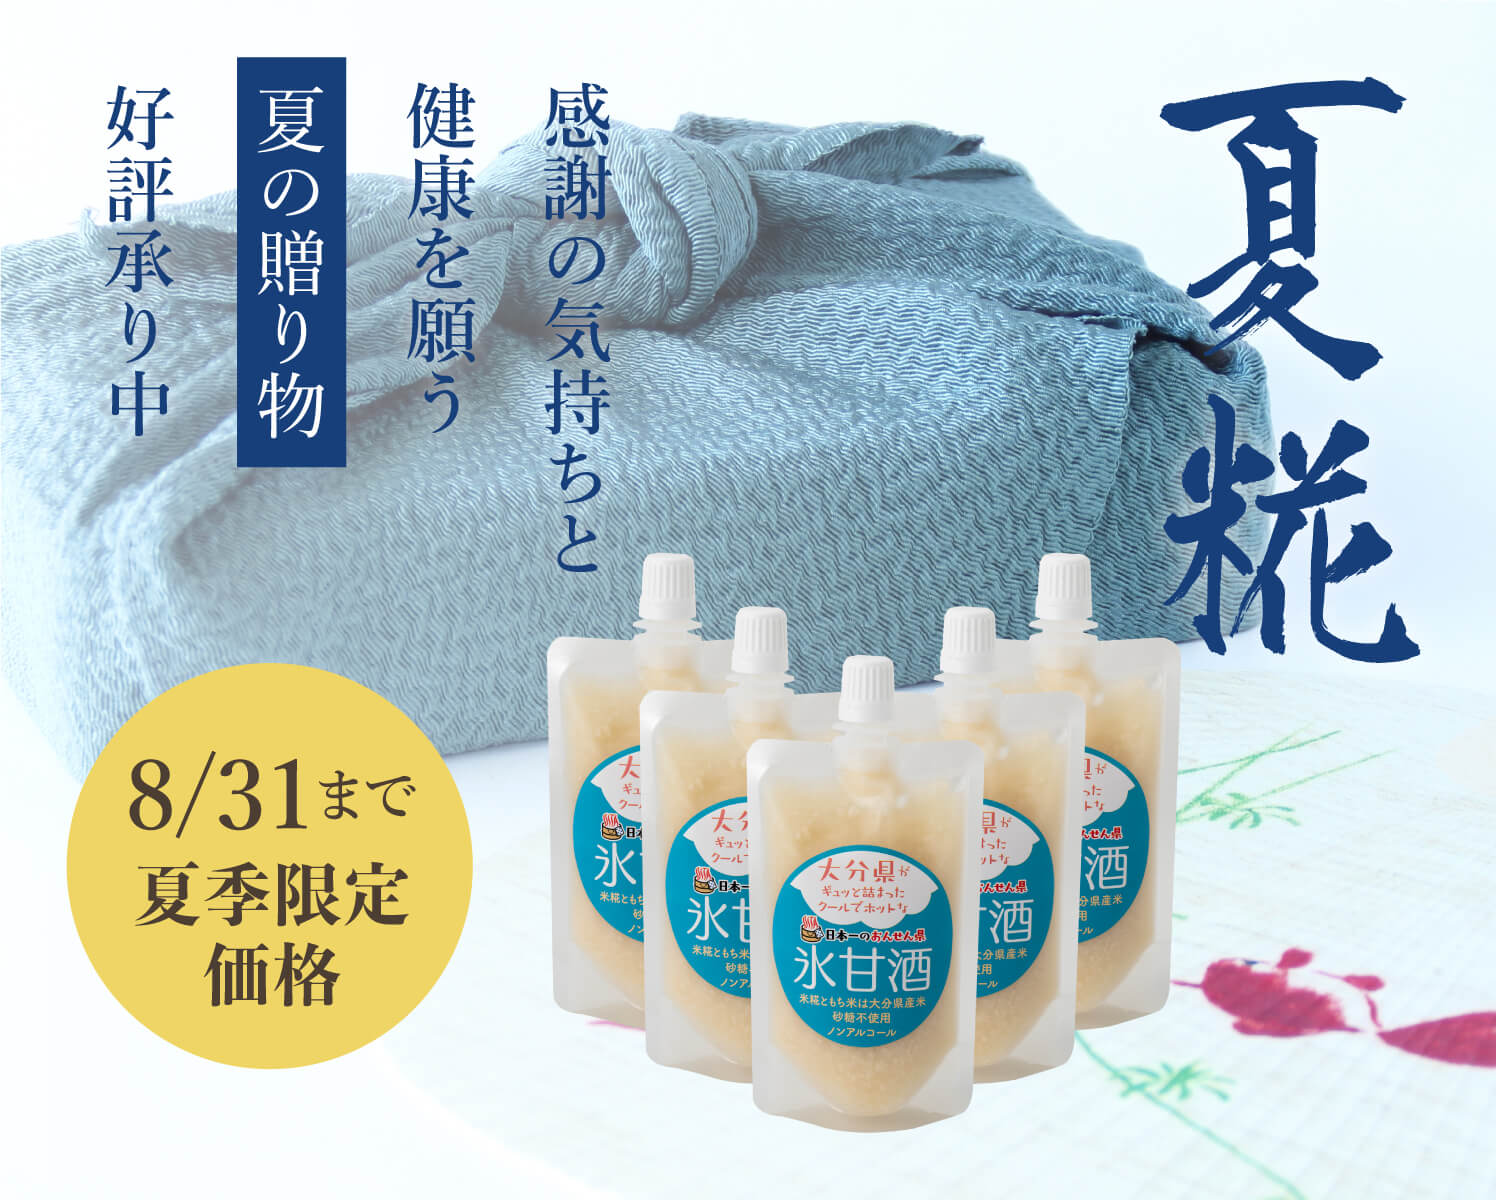 2684円 期間限定キャンペーン 糀屋本店 冷凍米糀 生糀 大分県産米